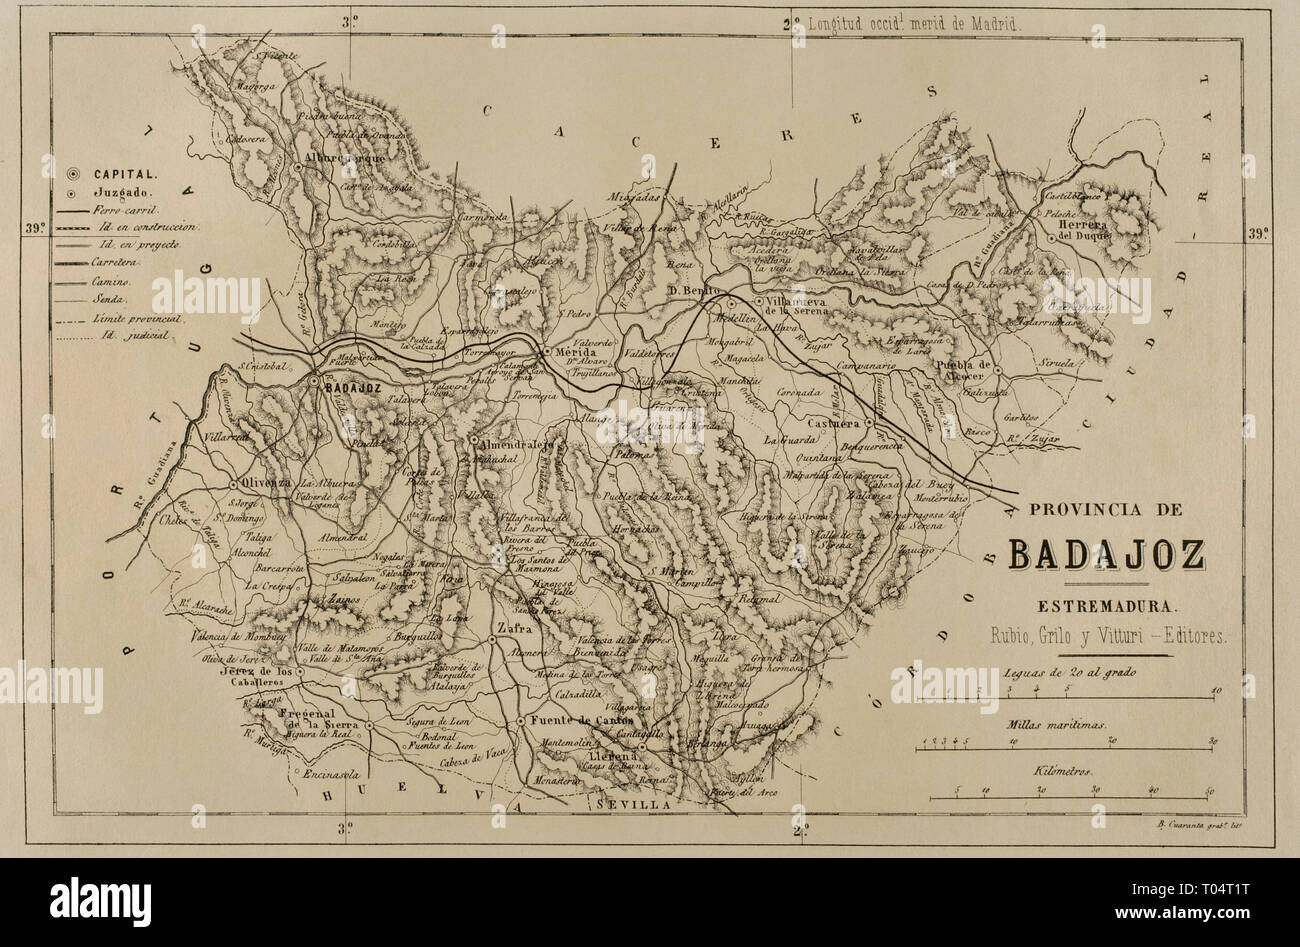 Map of the province of Badajoz. Extremadura, Spain. Cronica General de España, Historia Ilustrada y Descriptiva de sus Provincias. Extremadura, 1870. Stock Photo